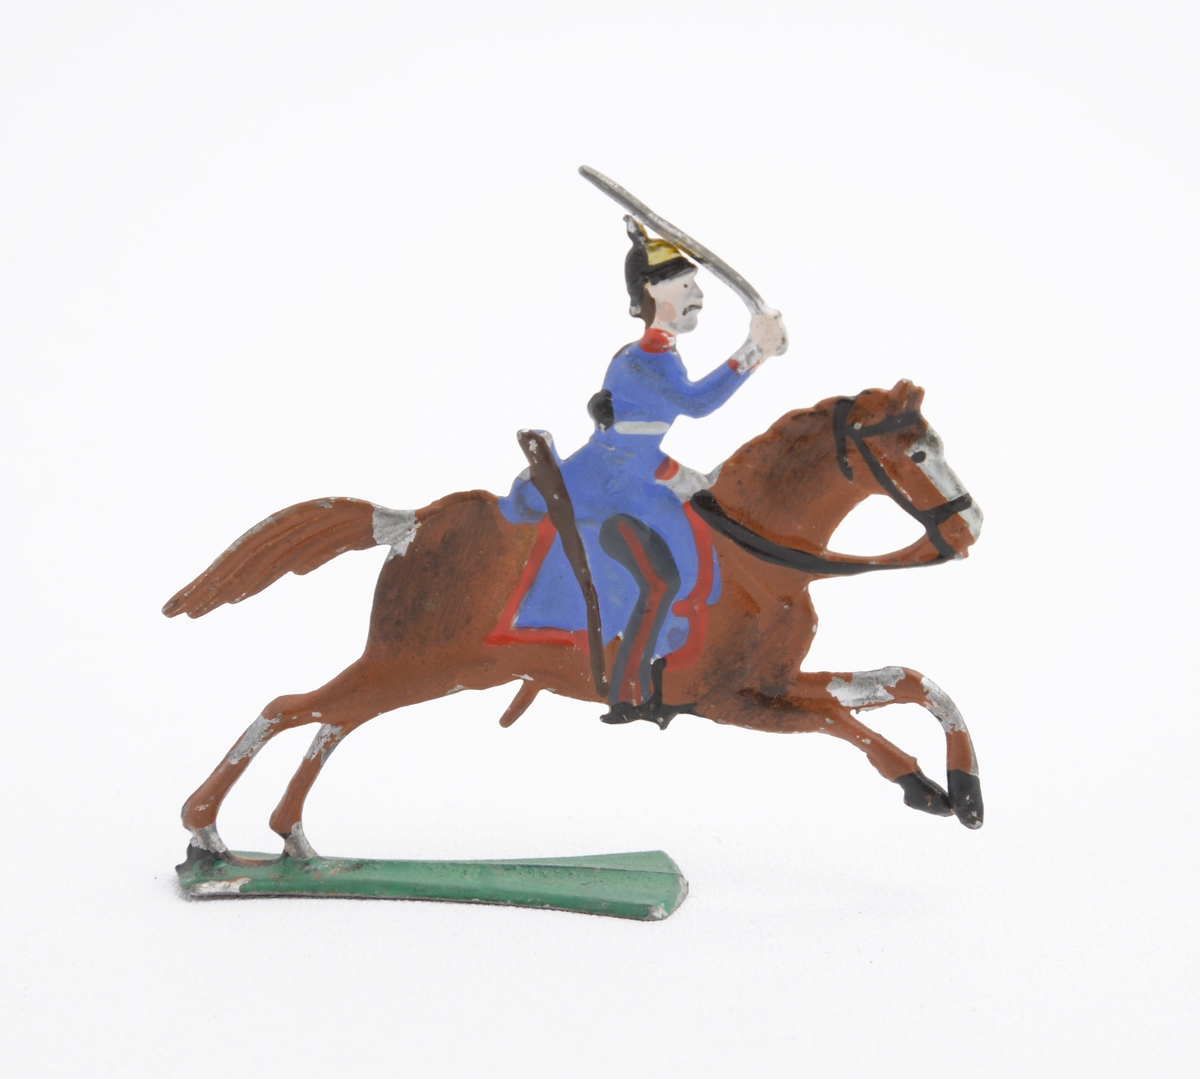 Ryttare till häst i blå uniform med dragen sabel. Han är även utrustad med koppel och pickelhuva. Sadeln är blå med röda kanter. Hästen brun på grön platta.
Inskrivet i huvudkatalog 1963.